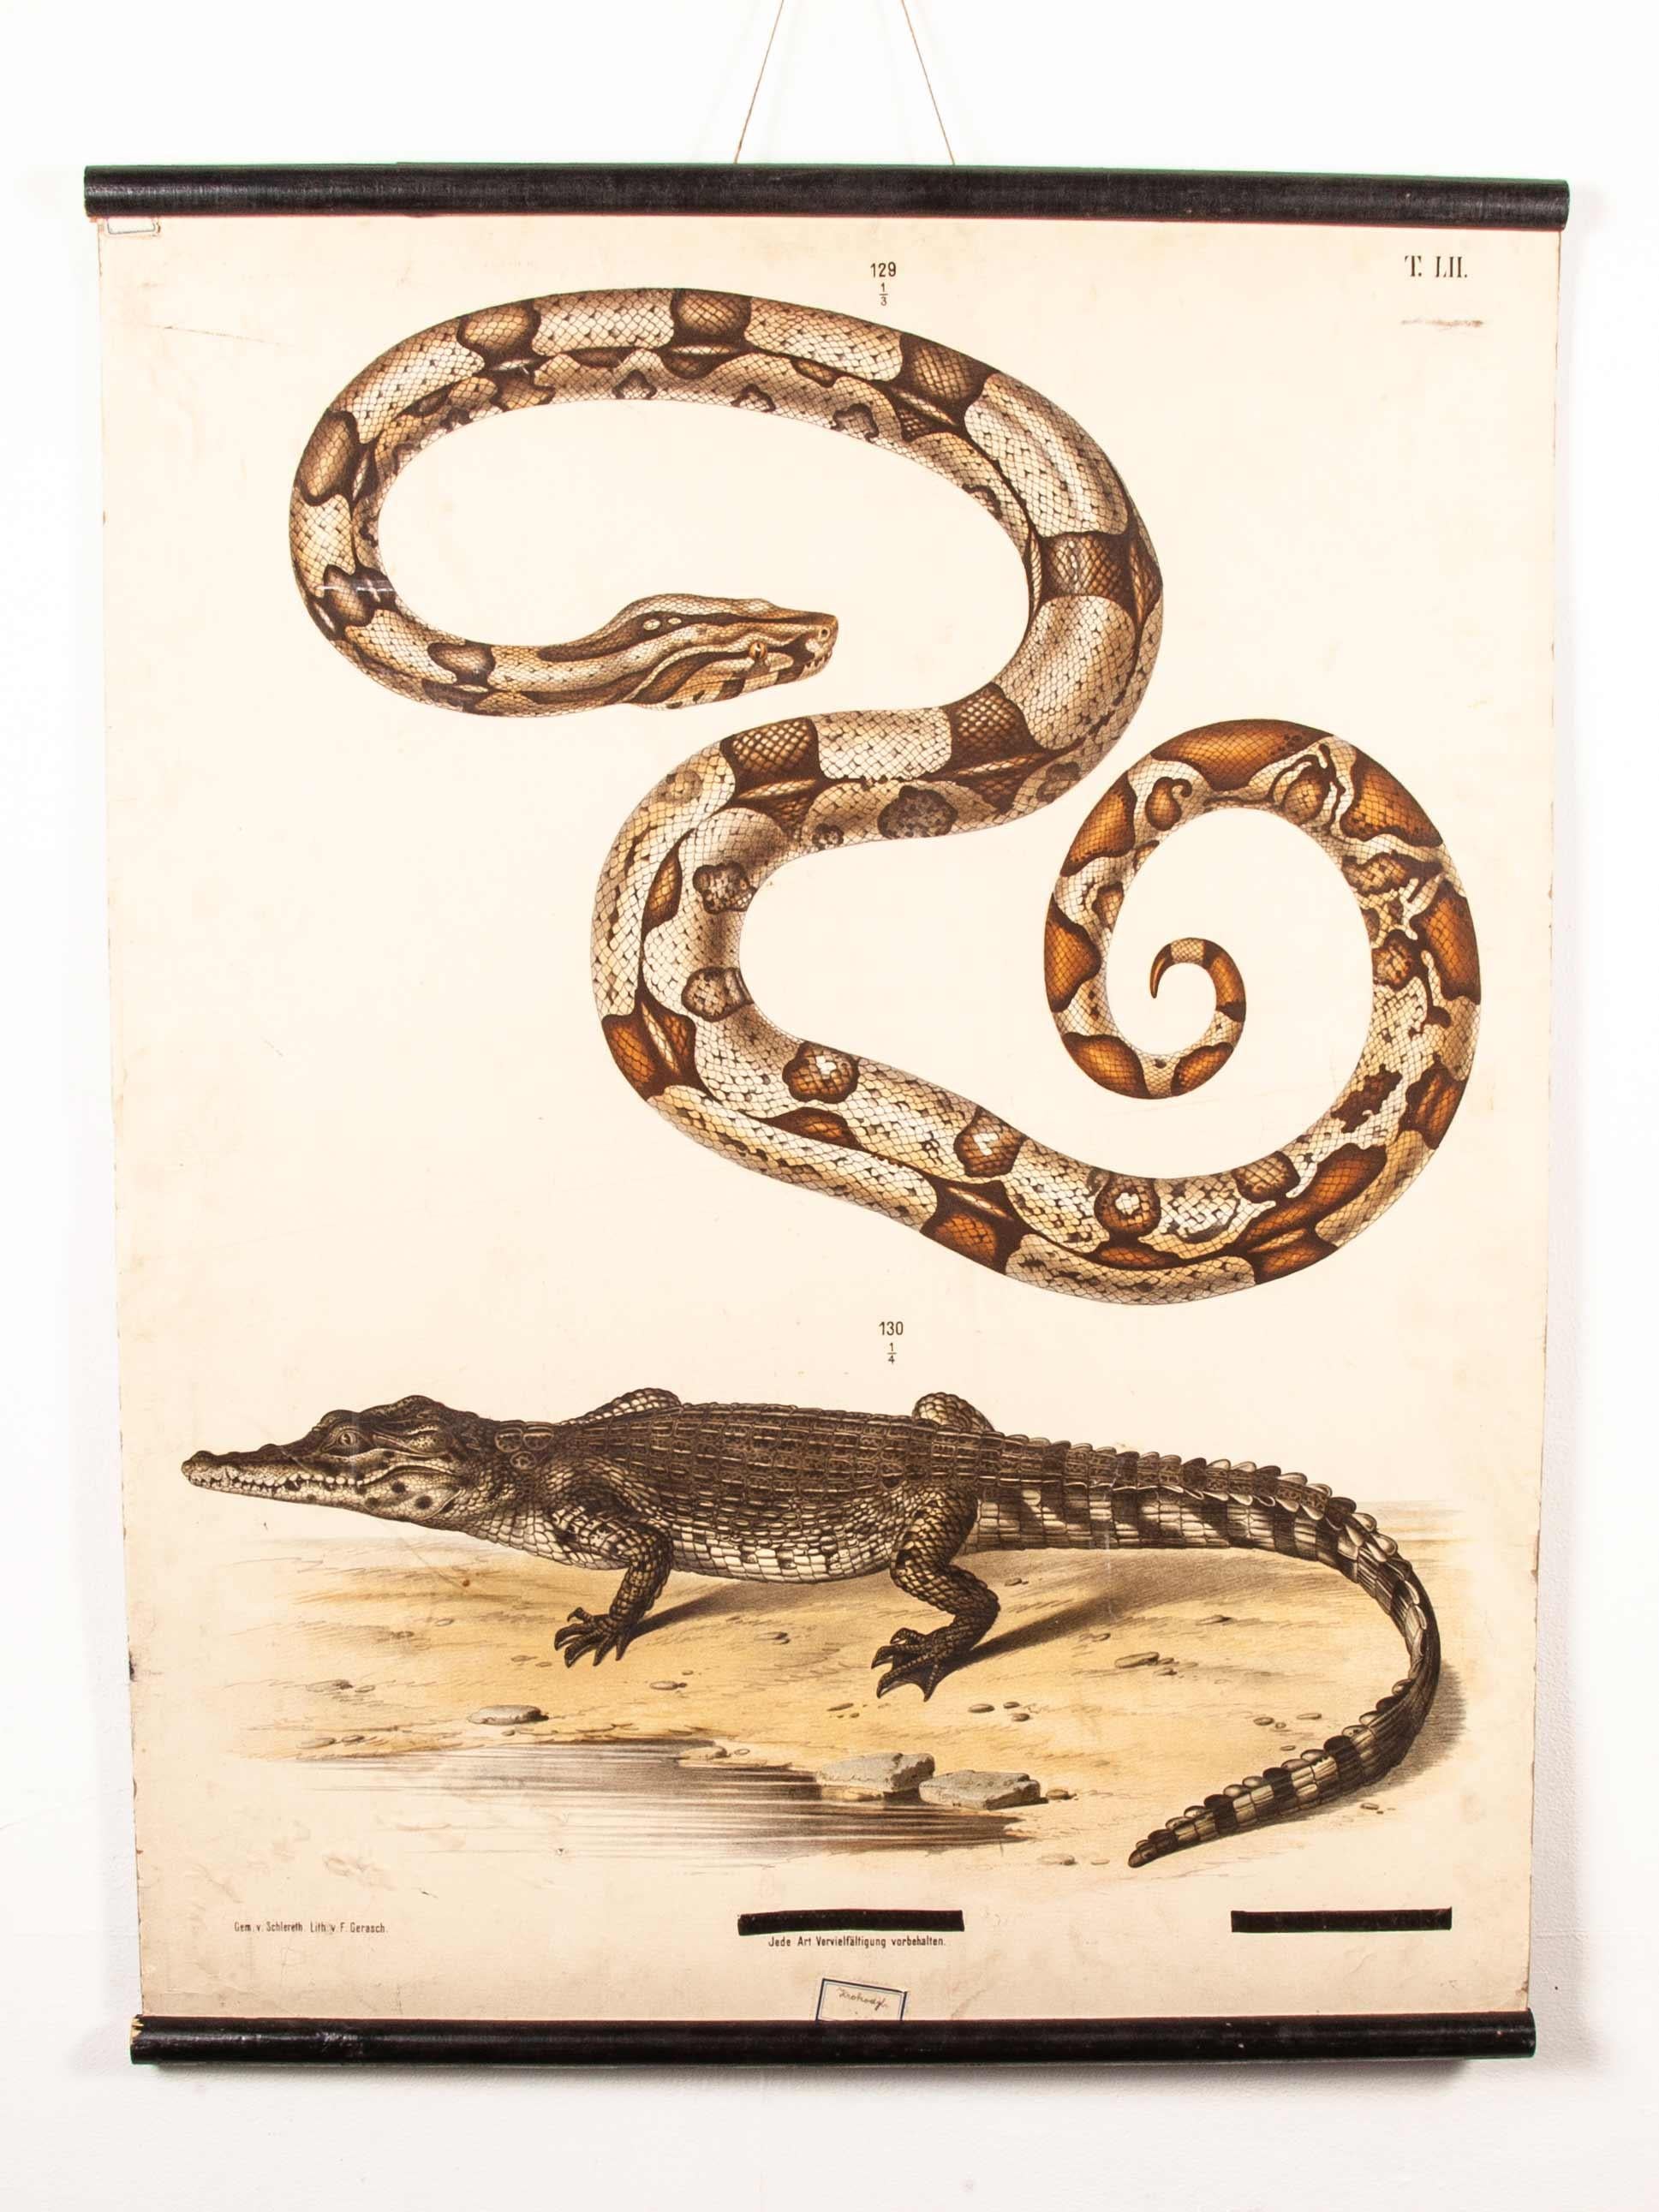 tableau éducatif allemand du 19ème siècle - serpent et crocodile. tableau éducatif exceptionnel du 19ème siècle provenant de la République tchèque. Il s'agit d'une lithographie ancienne accrochée à des lattes de bois fendues d'origine. En excellent